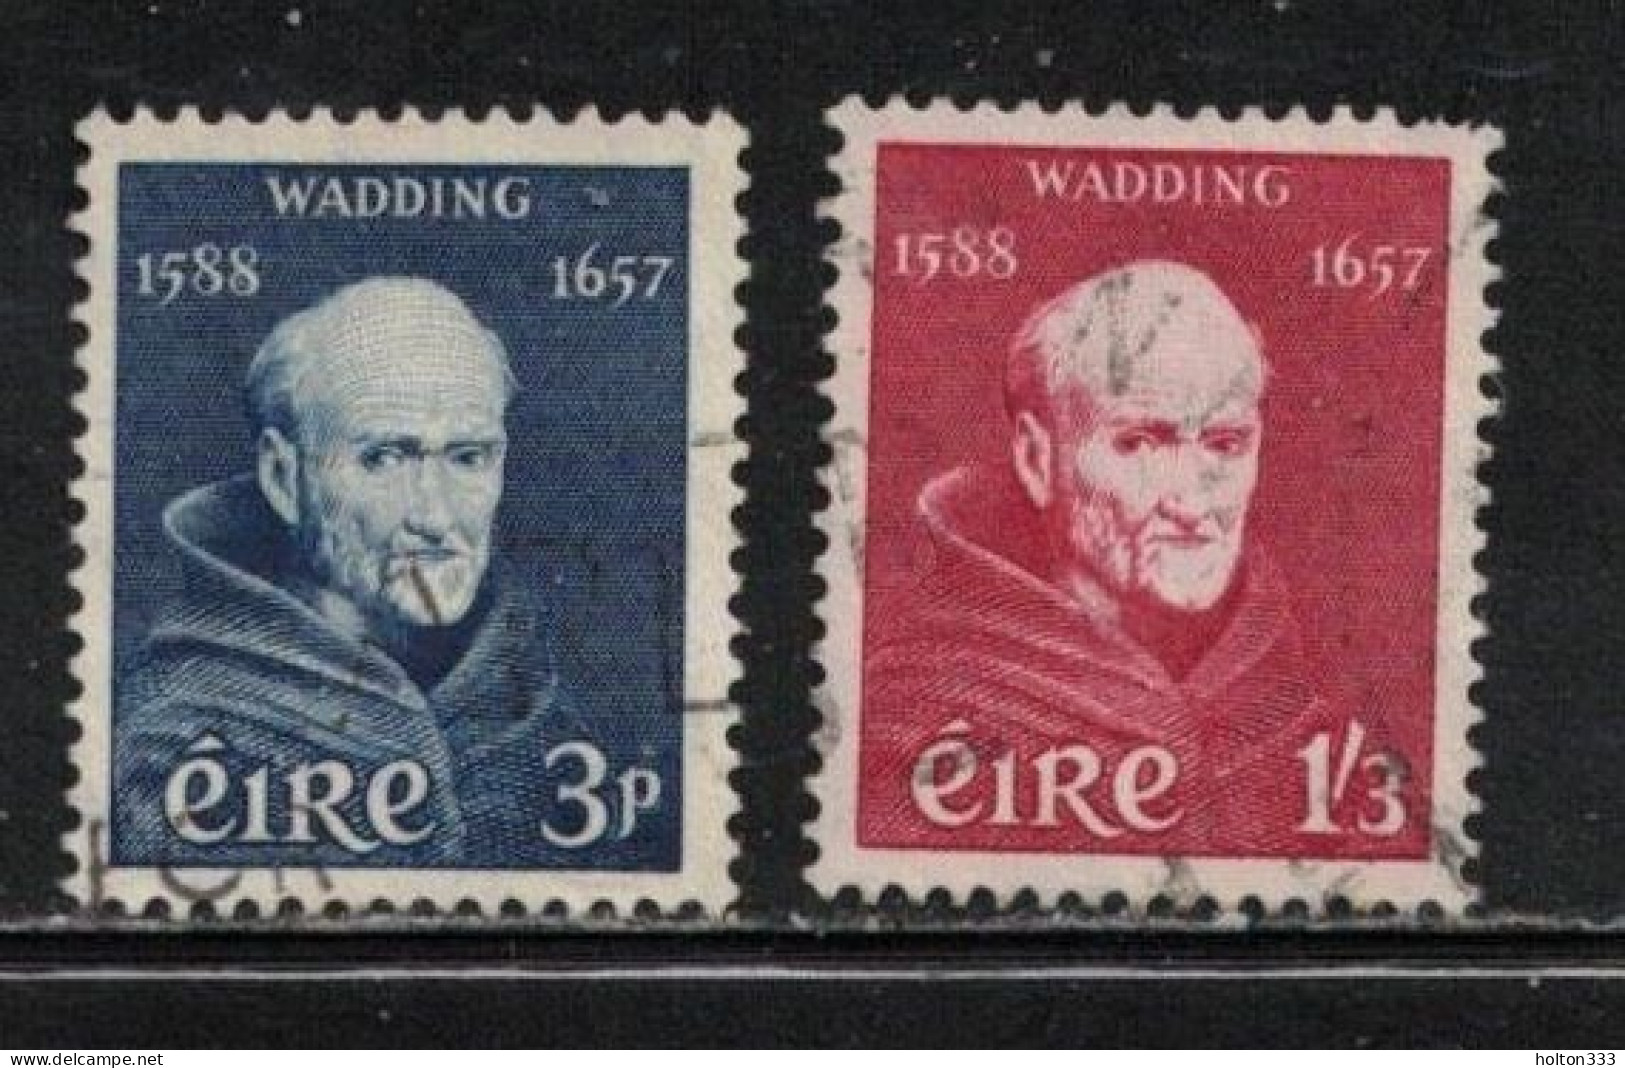 IRELAND Scott # 163-4 Used - Father Luke Wadding - Used Stamps